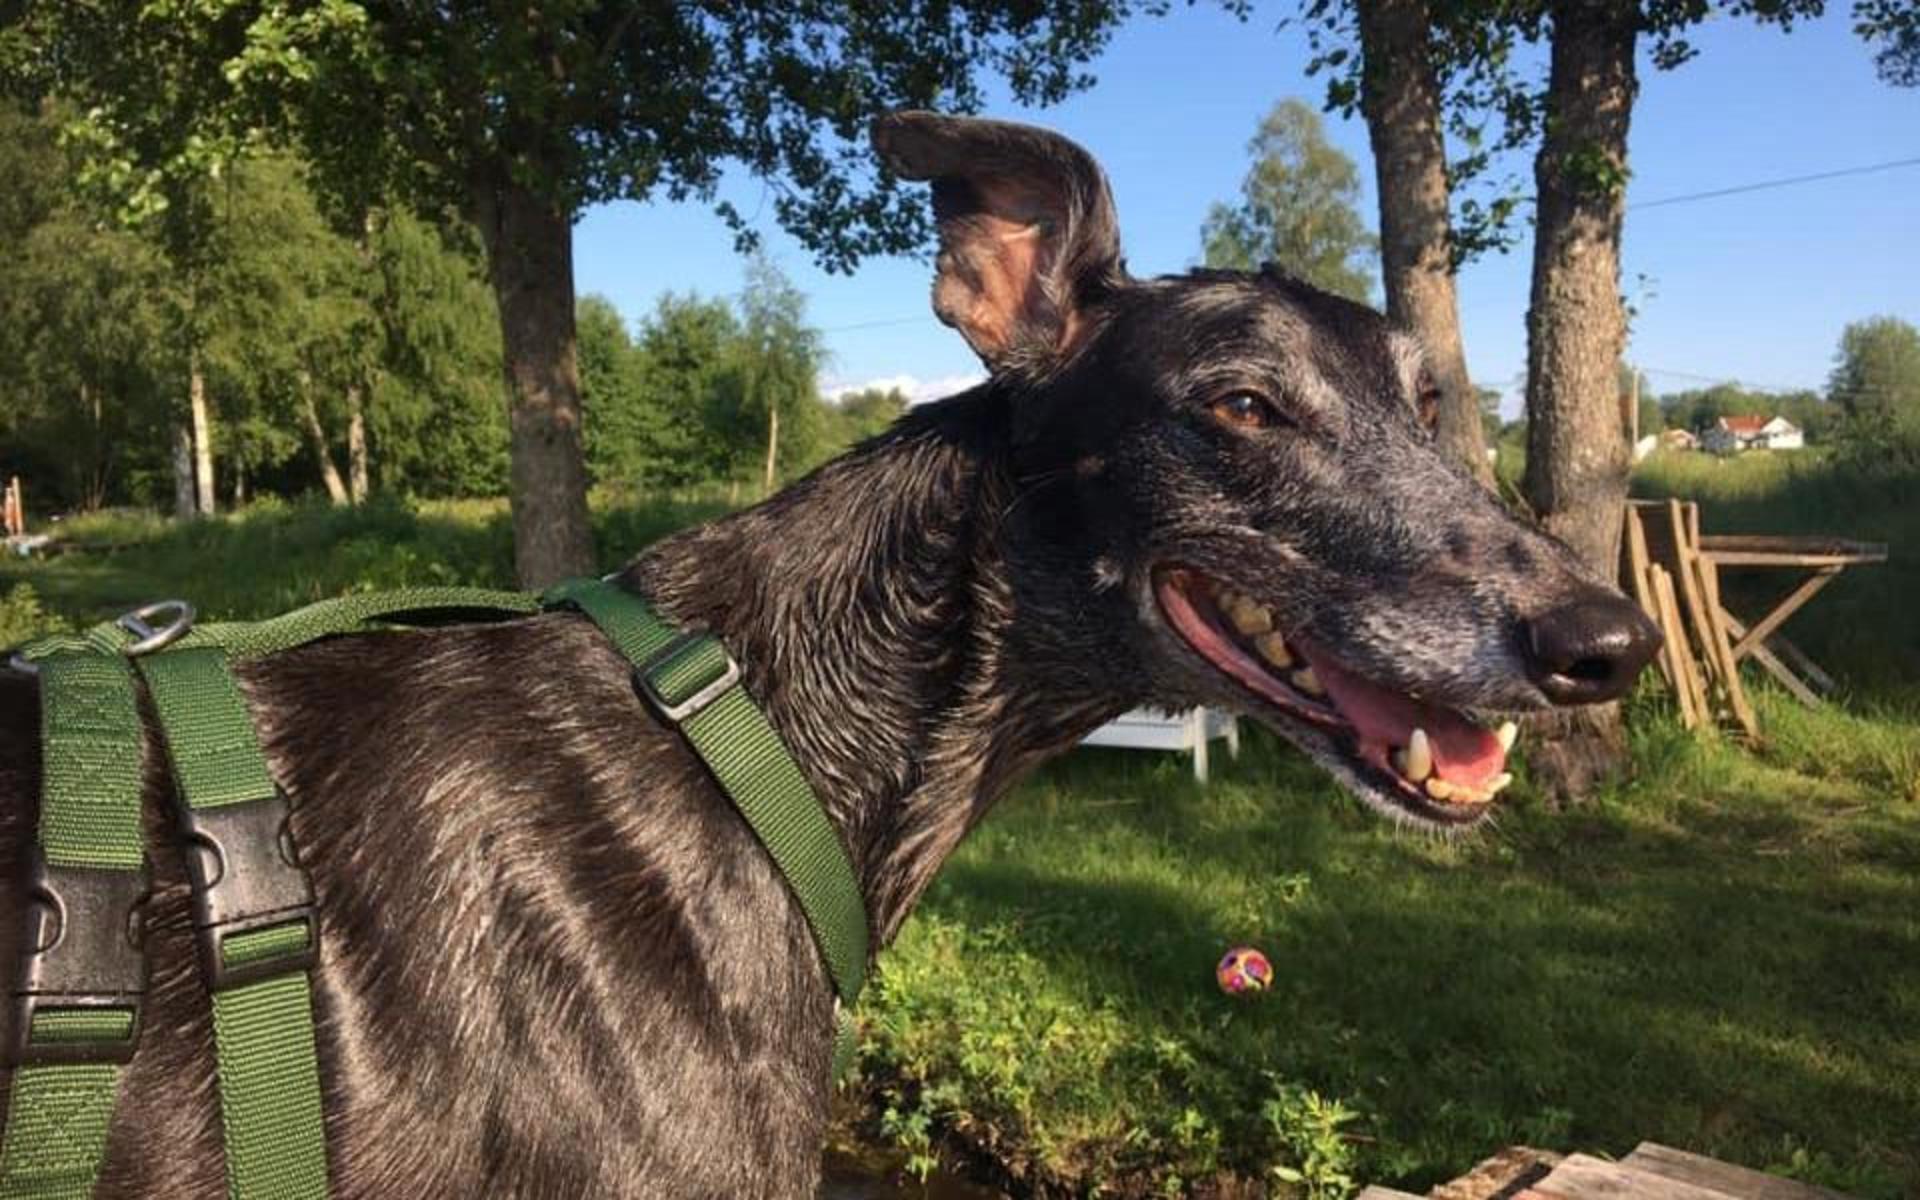 ”Clawdy, 5 årig Greyhound som njuter av sommar och lite bad vid Öresjö. 30kg kärlek”, skriver Jenny Angledal.